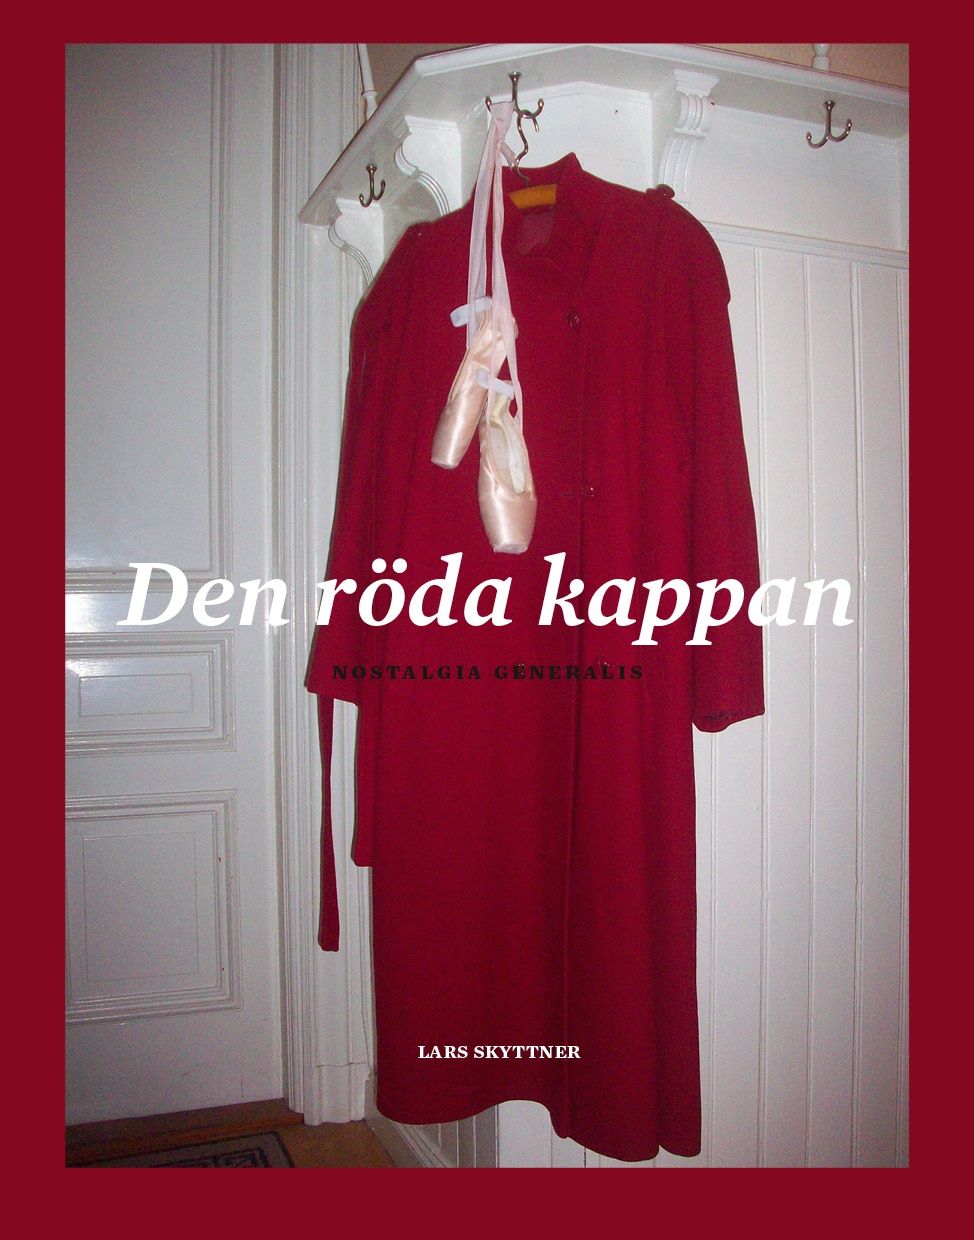 Den röda kappan, e-bok av Lars Skyttner